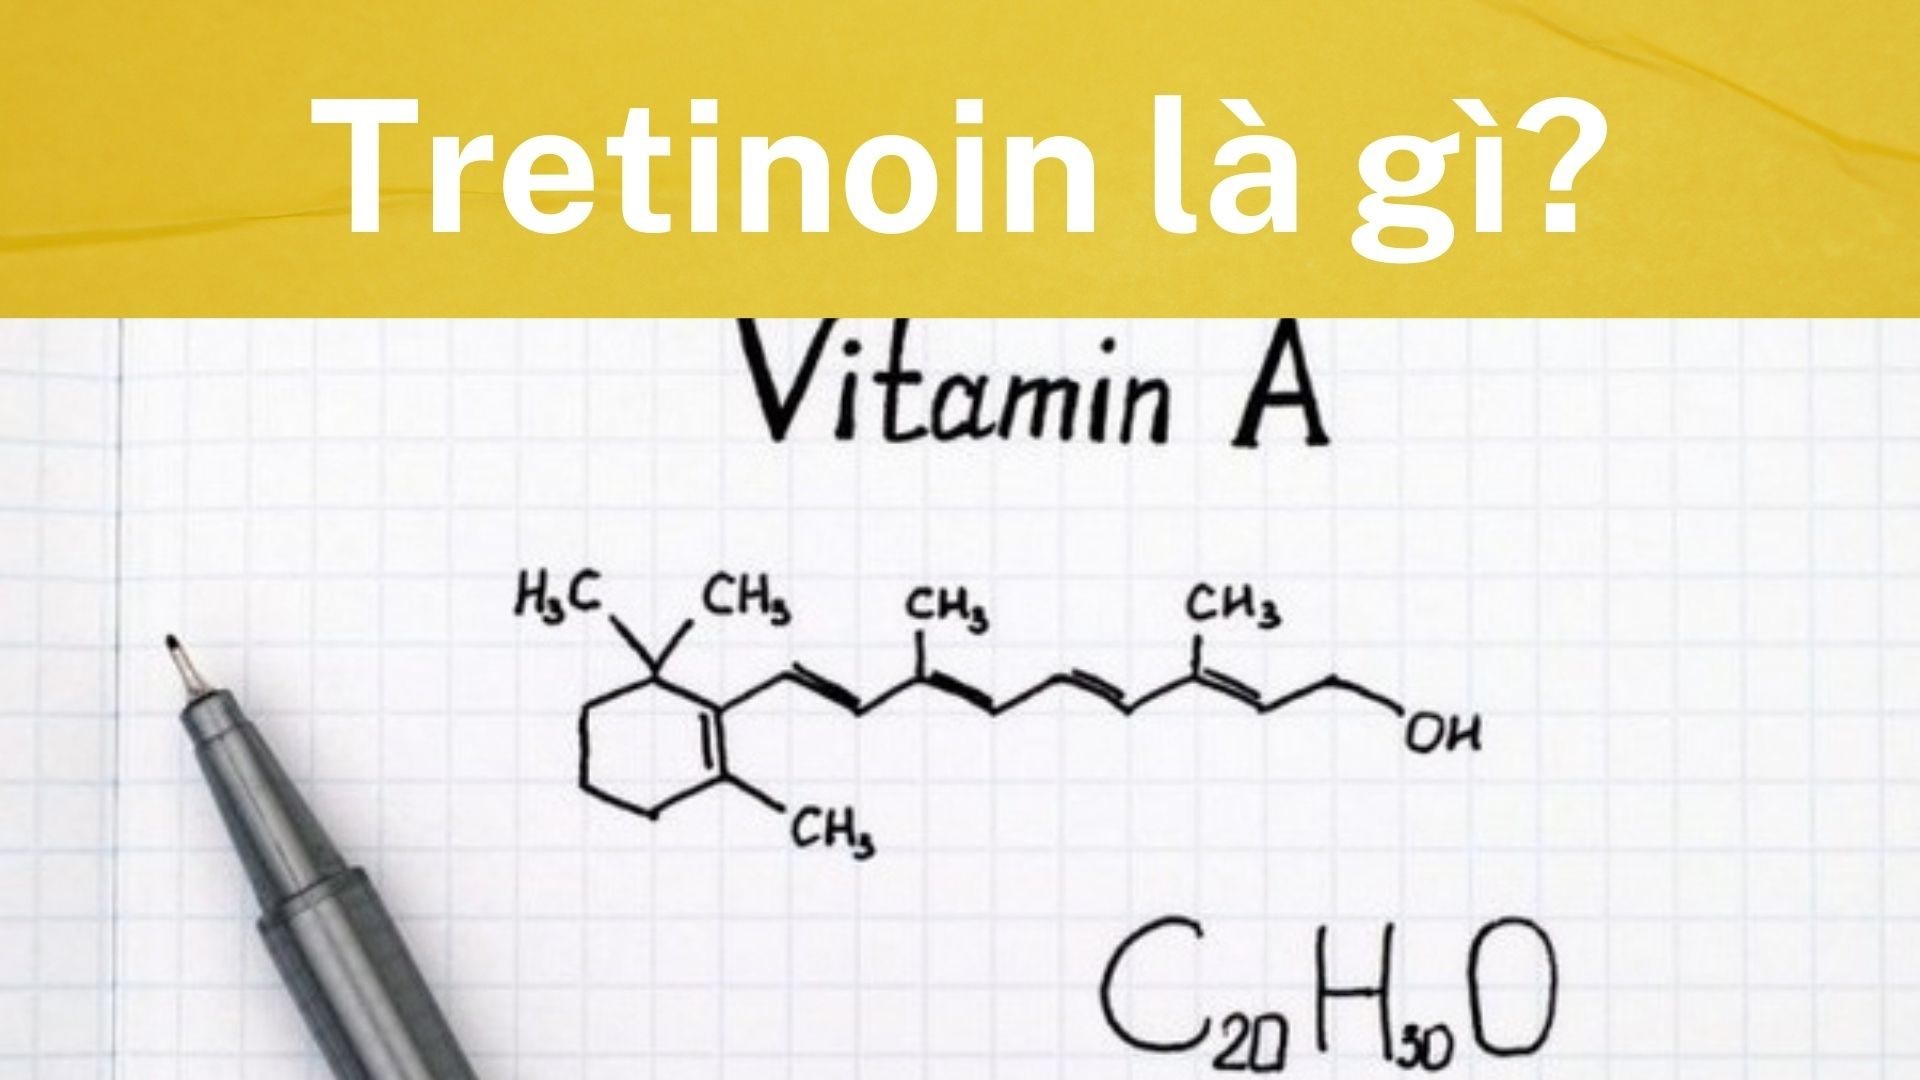 Tretinoin là gì? Tác dụng và cách dùng đúng cách ngăn ngừa tác dụng phụ